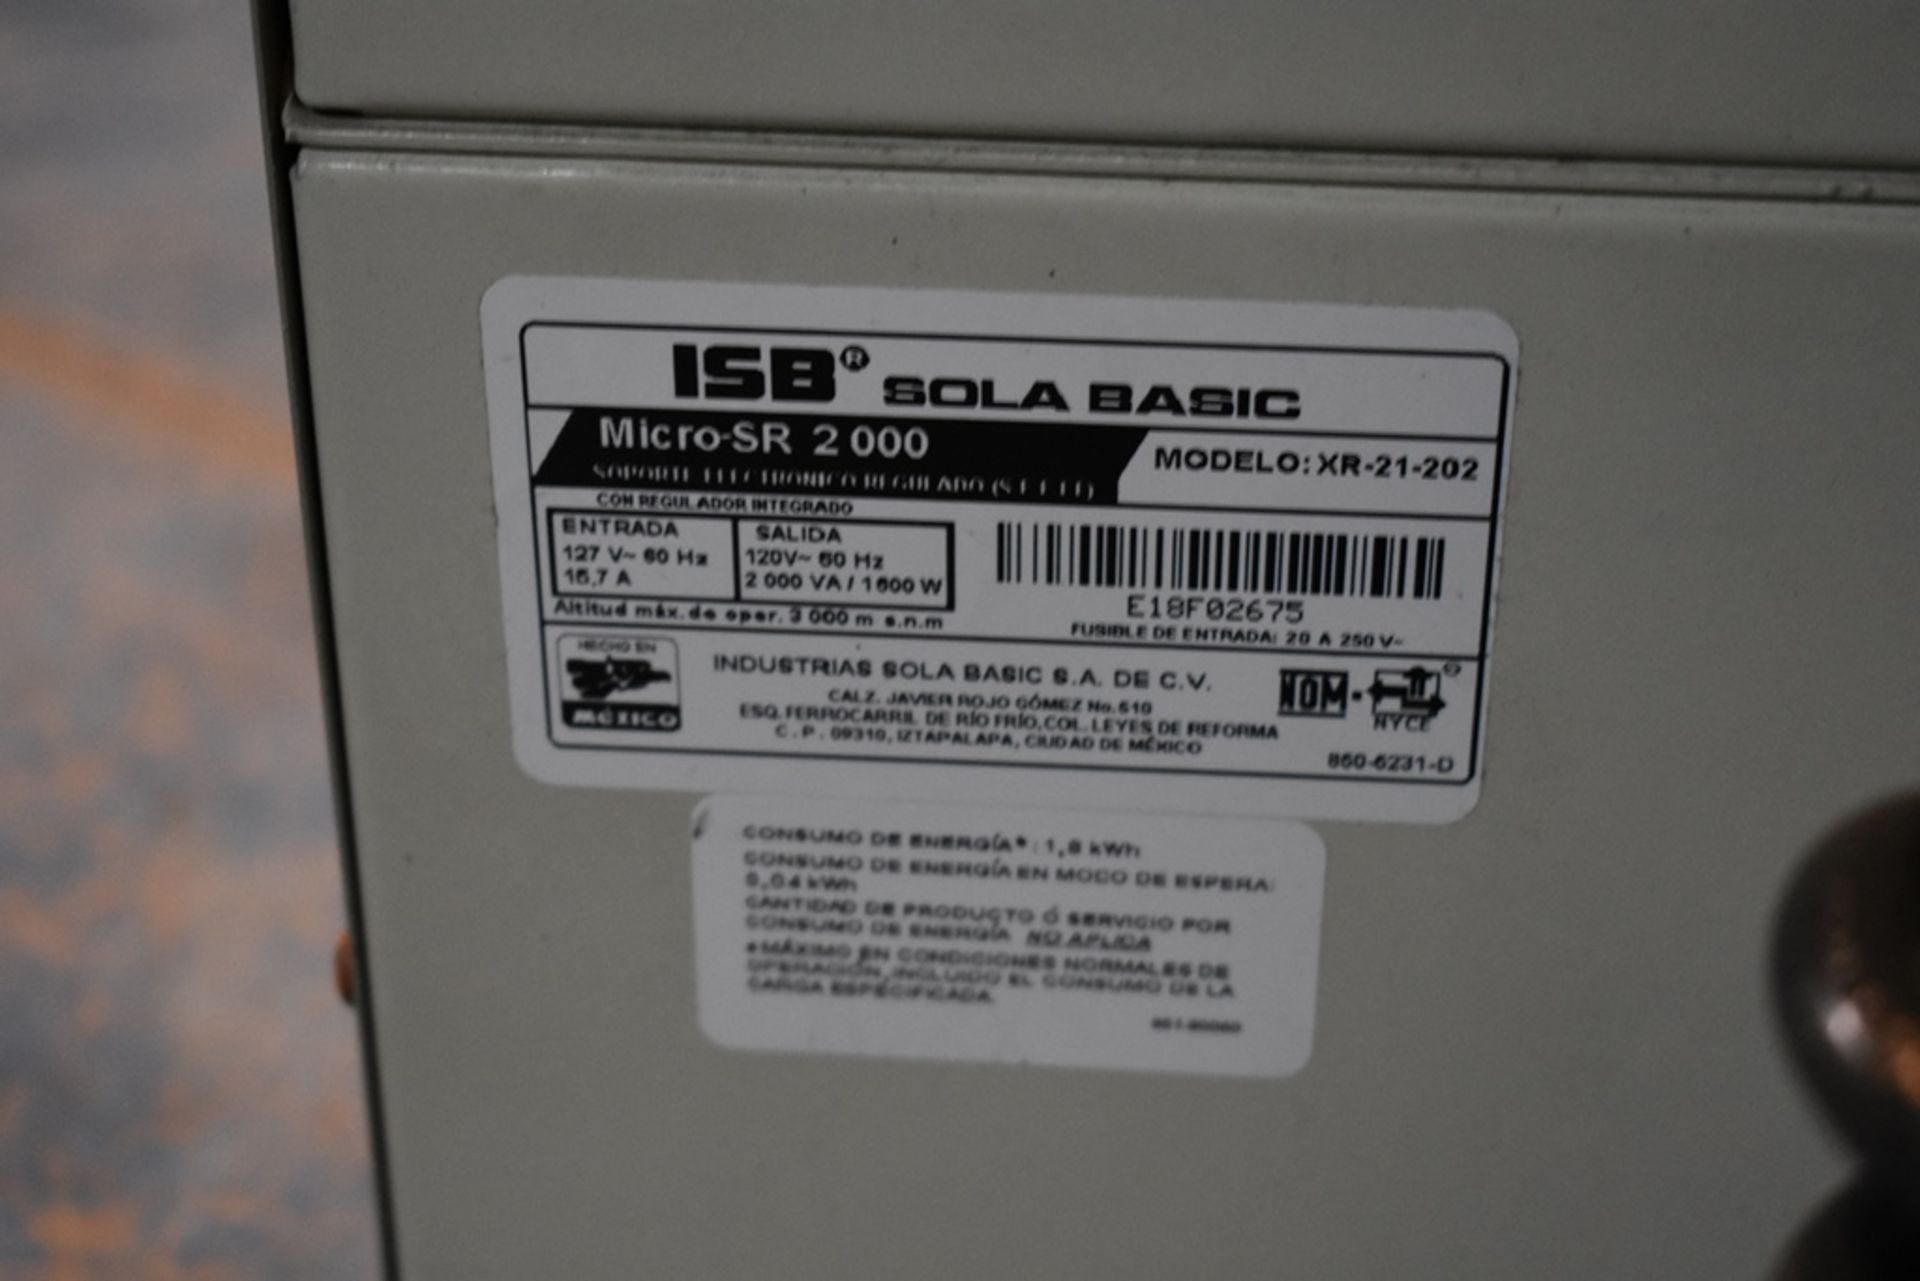 Dos reguladores de voltaje marca ISB Solabasic, modelo: XR-21-202, Series: E18F02675, E18H01516 - Image 10 of 17